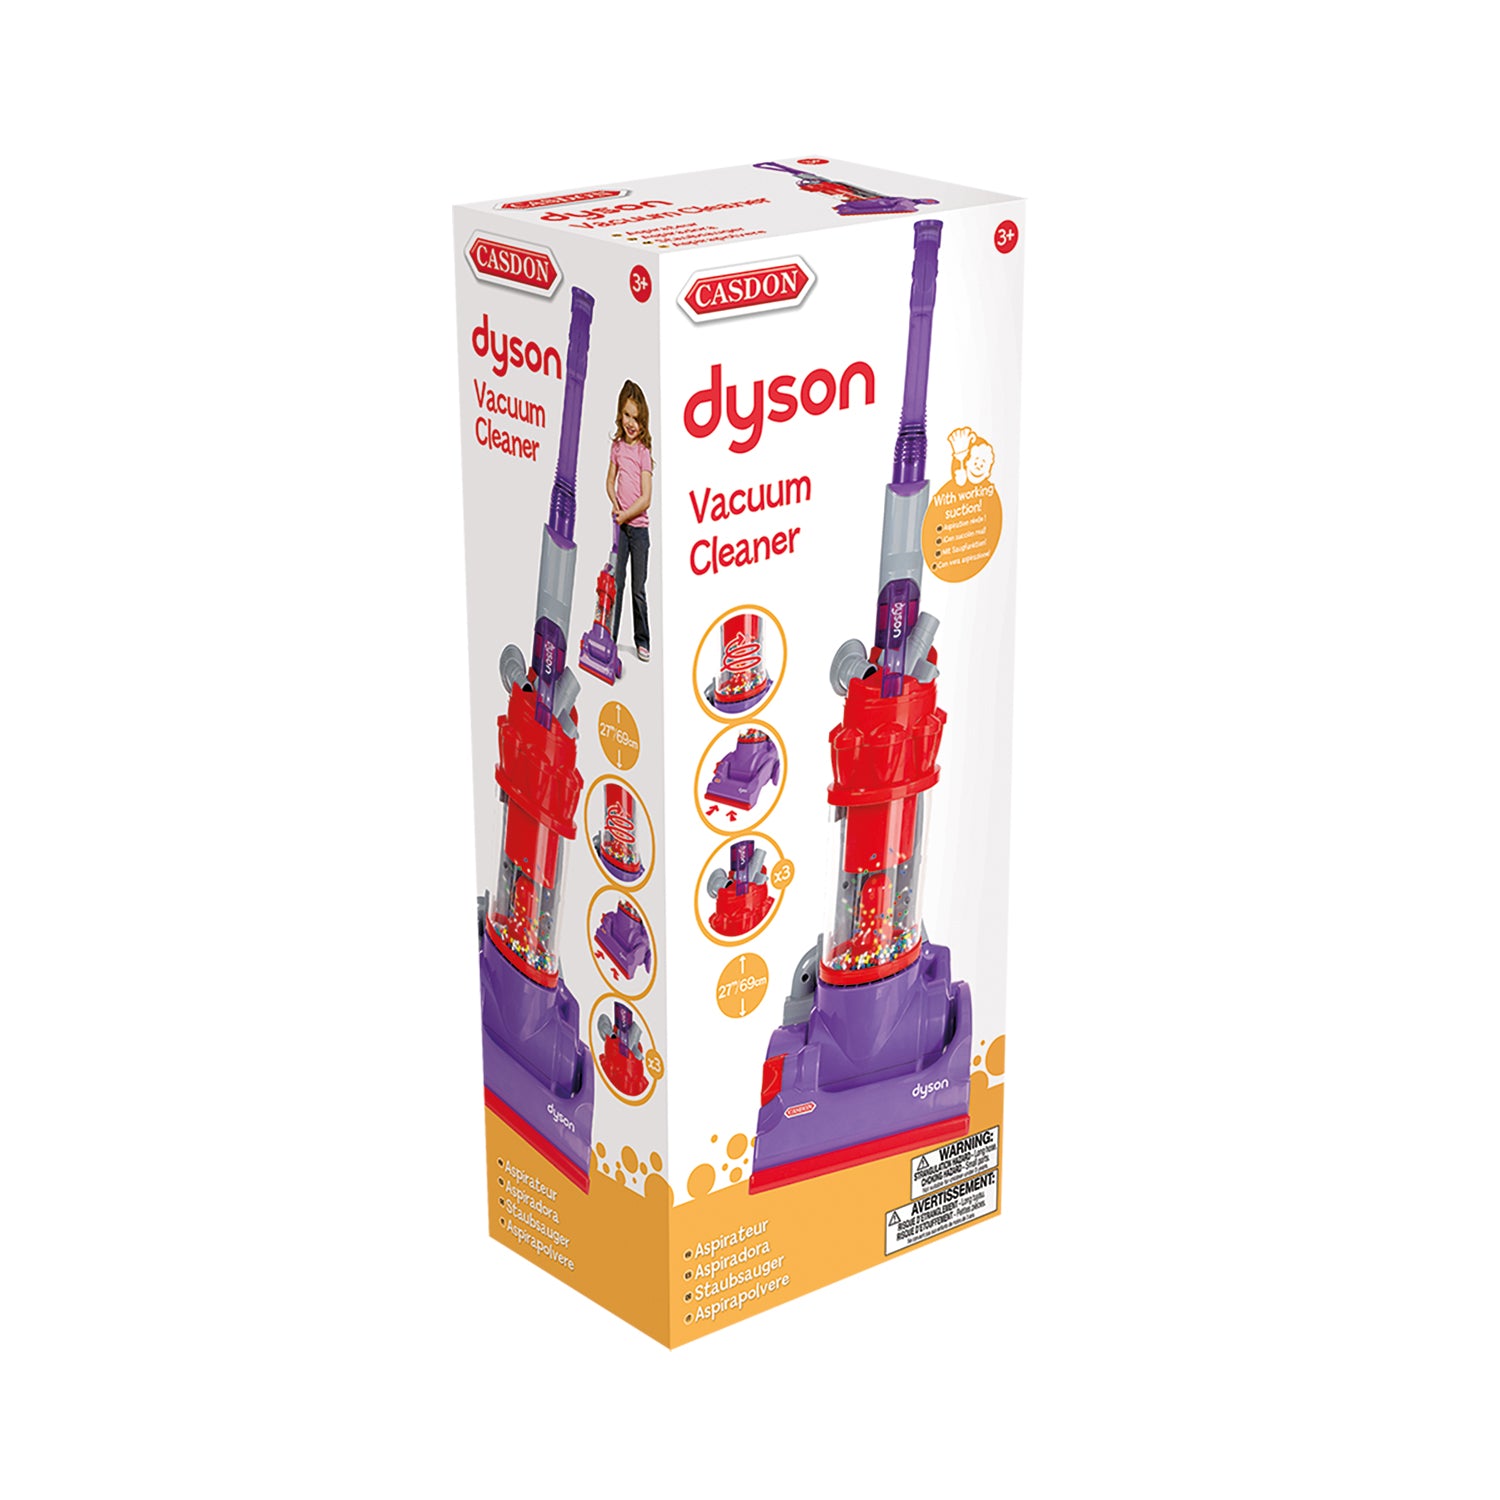 Casdon - Dyson DC14 Vacuum Cleaner Toy